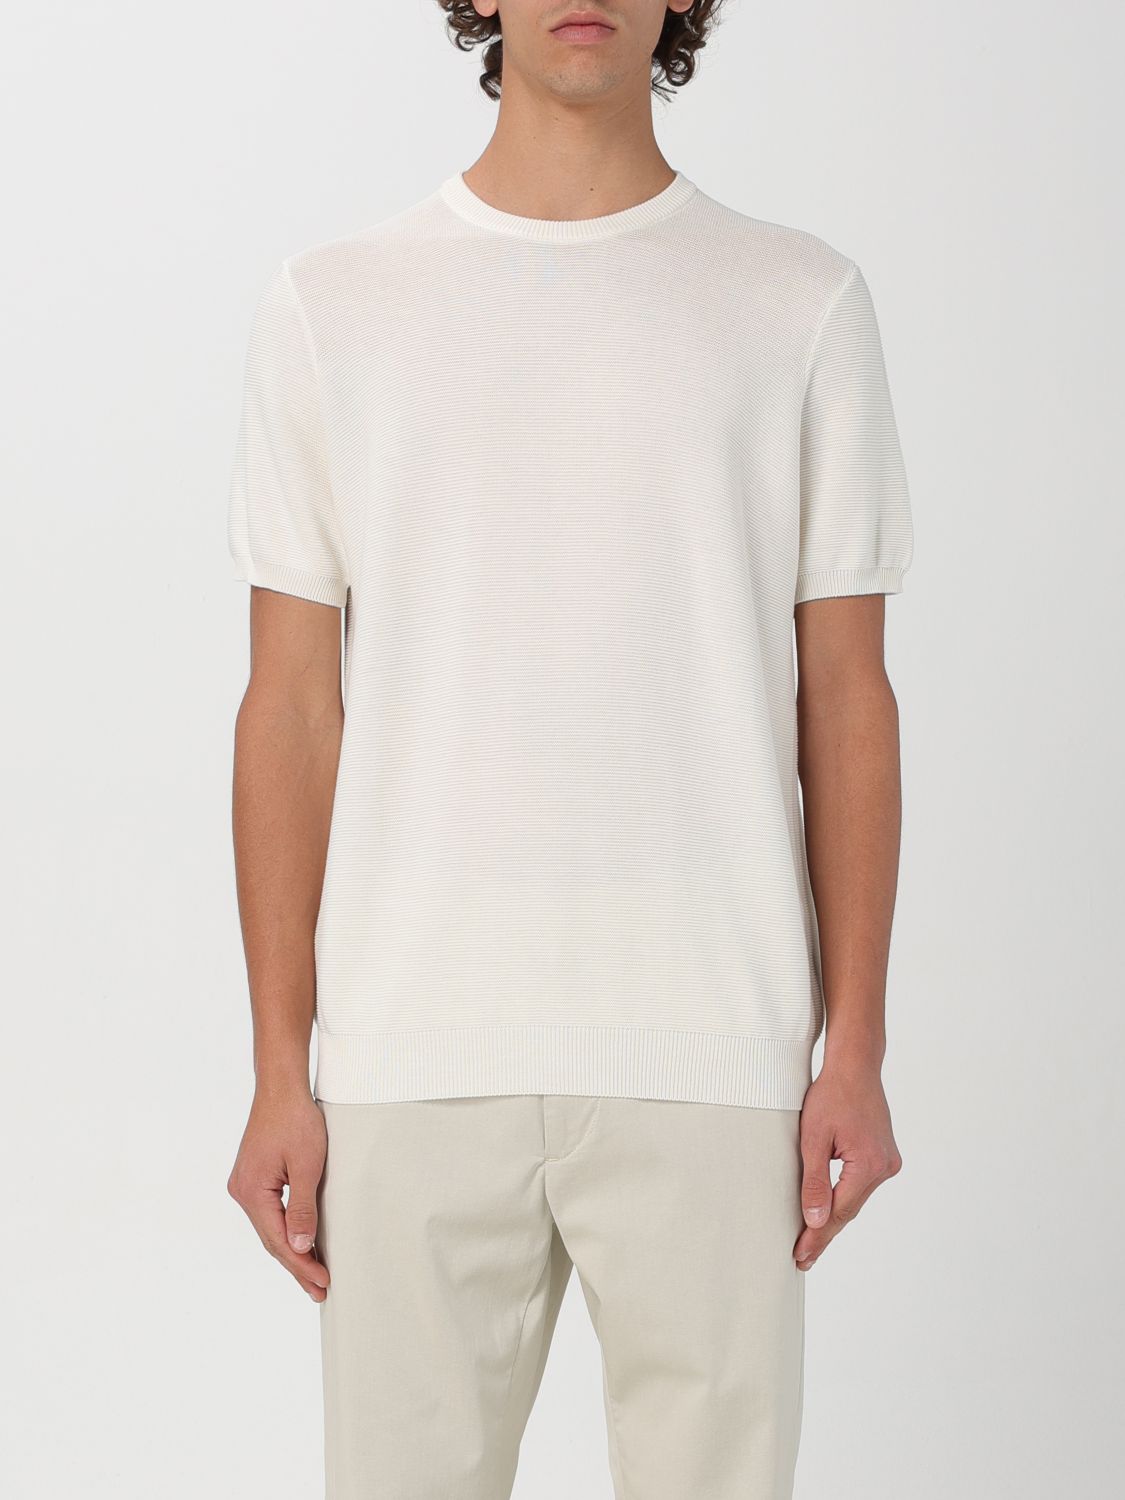 Drumohr T-Shirt DRUMOHR Men color White